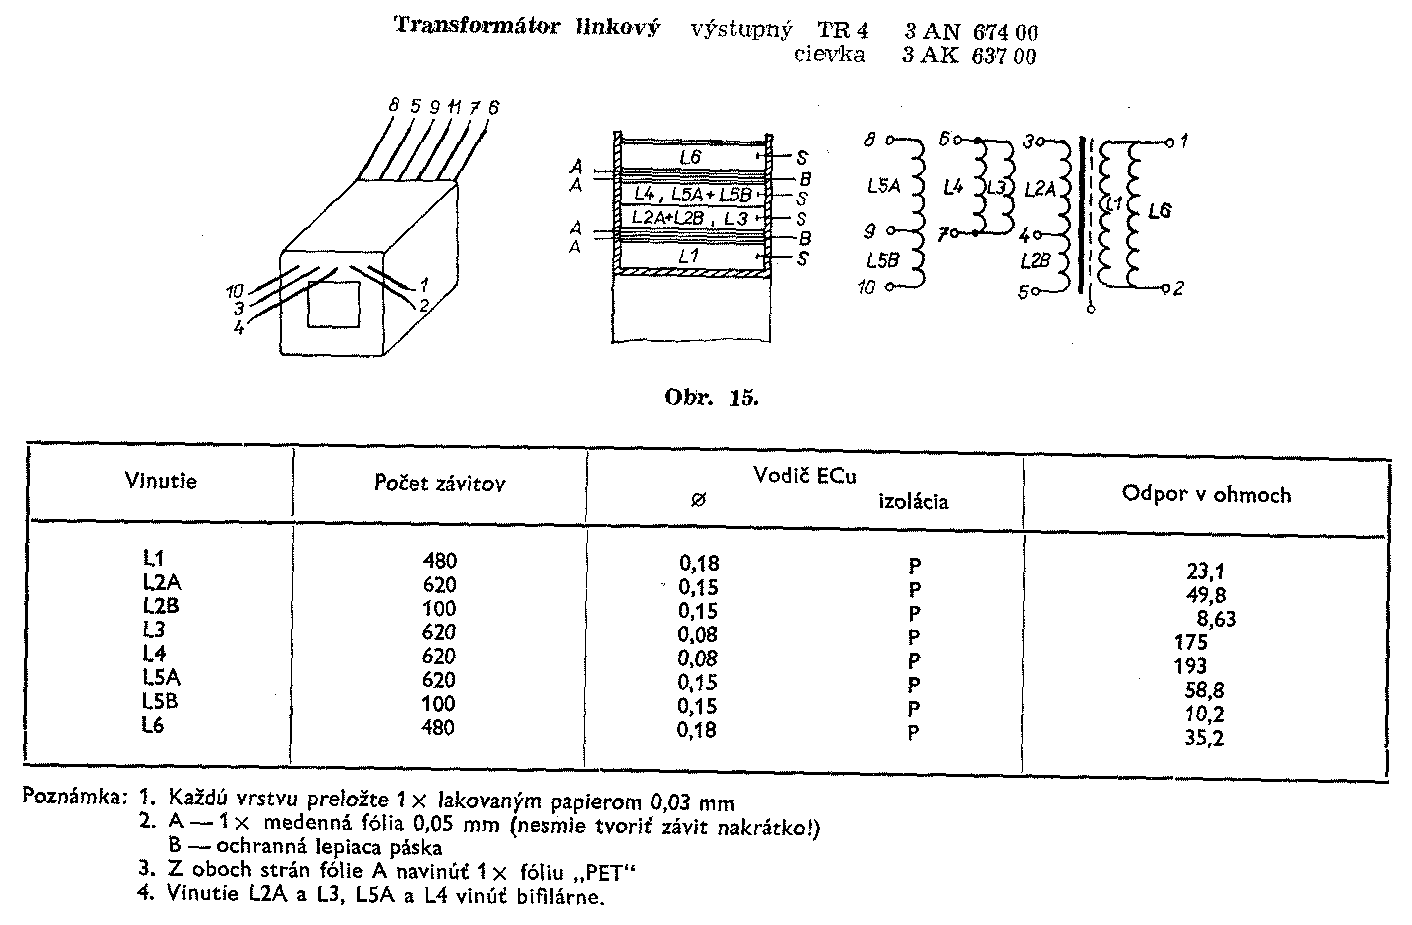 Navíjací predpis transformátora 3AN67400 (kliknutím sa zobrazí v plnom rozlíšení)